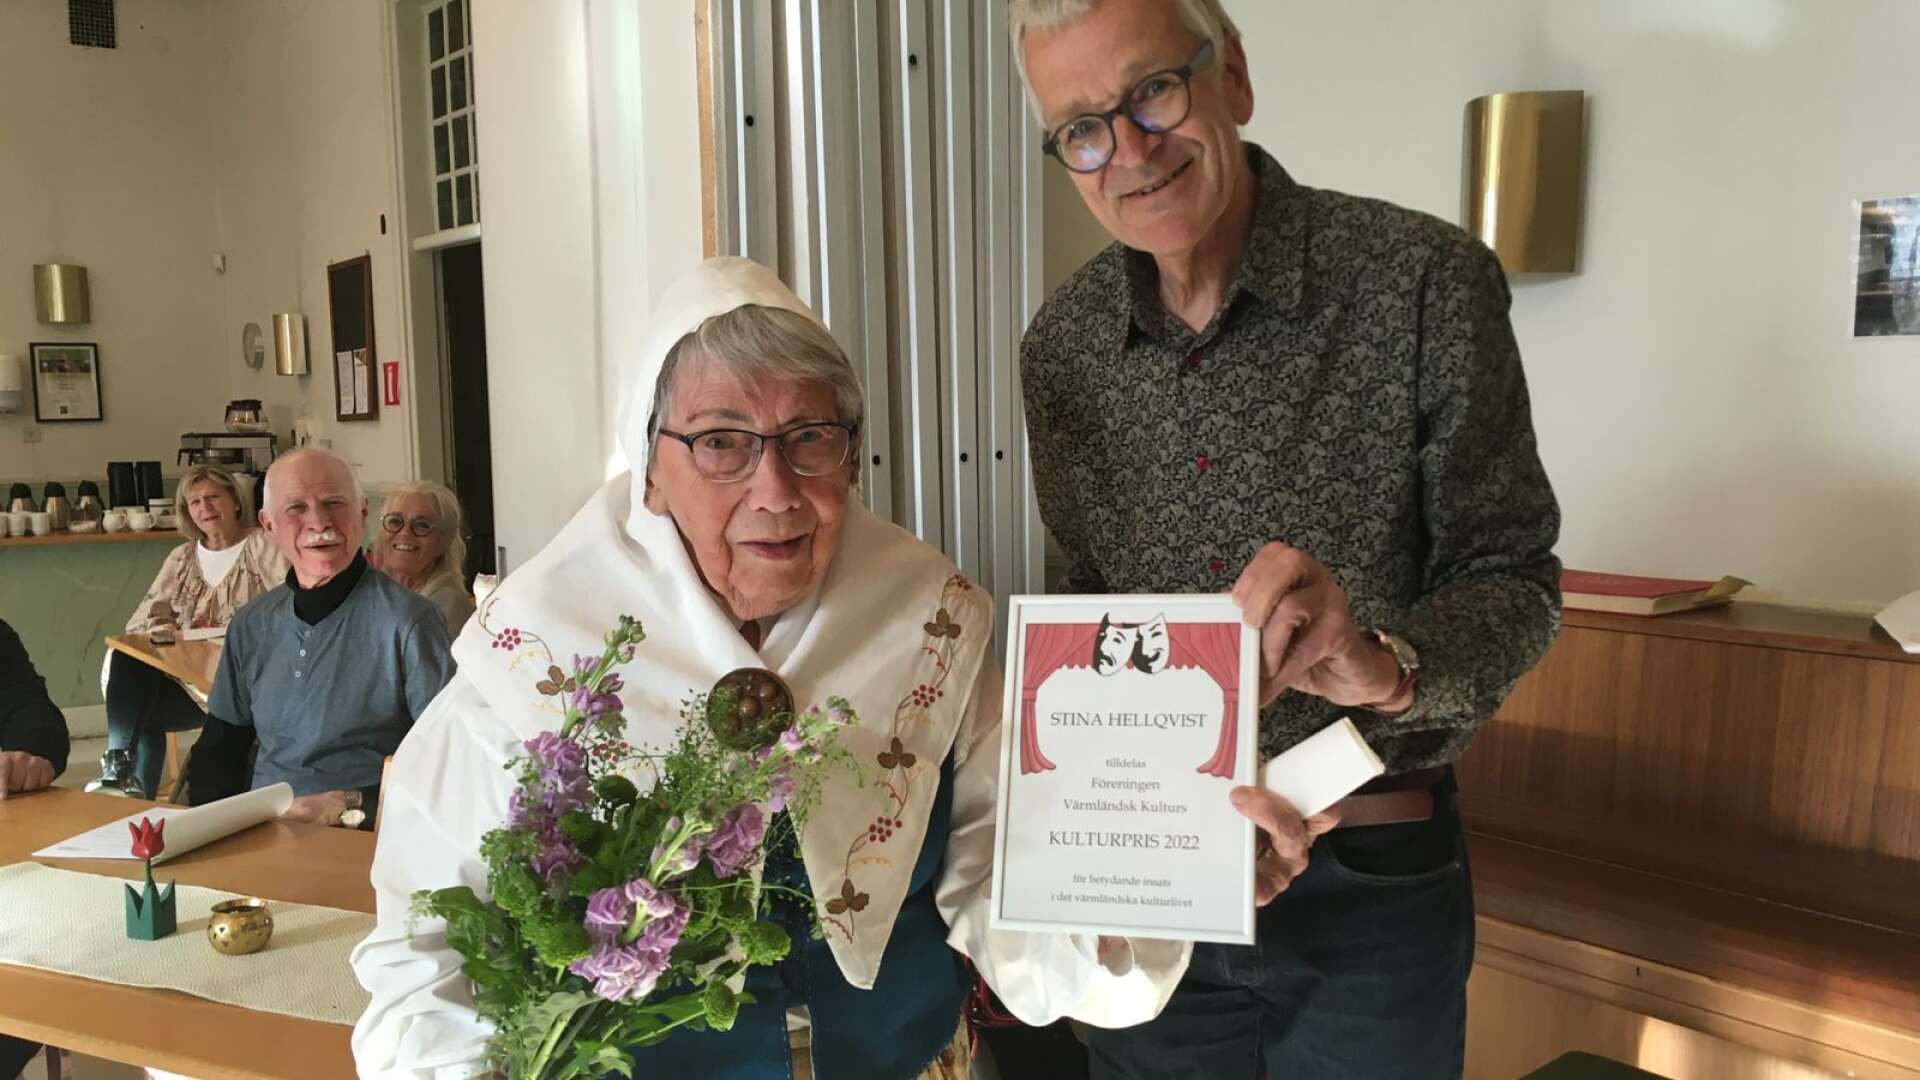 Stina Hellqvist får föreningen Värmländsk Kulturs kulturpris år 2022. Stina Hellqvist har haft stor betydelse för och gjort stora insatser i det värmländska kulturlivet i 70 år. Föreningens ordförande Peter Franke överräckte blommor och diplom.